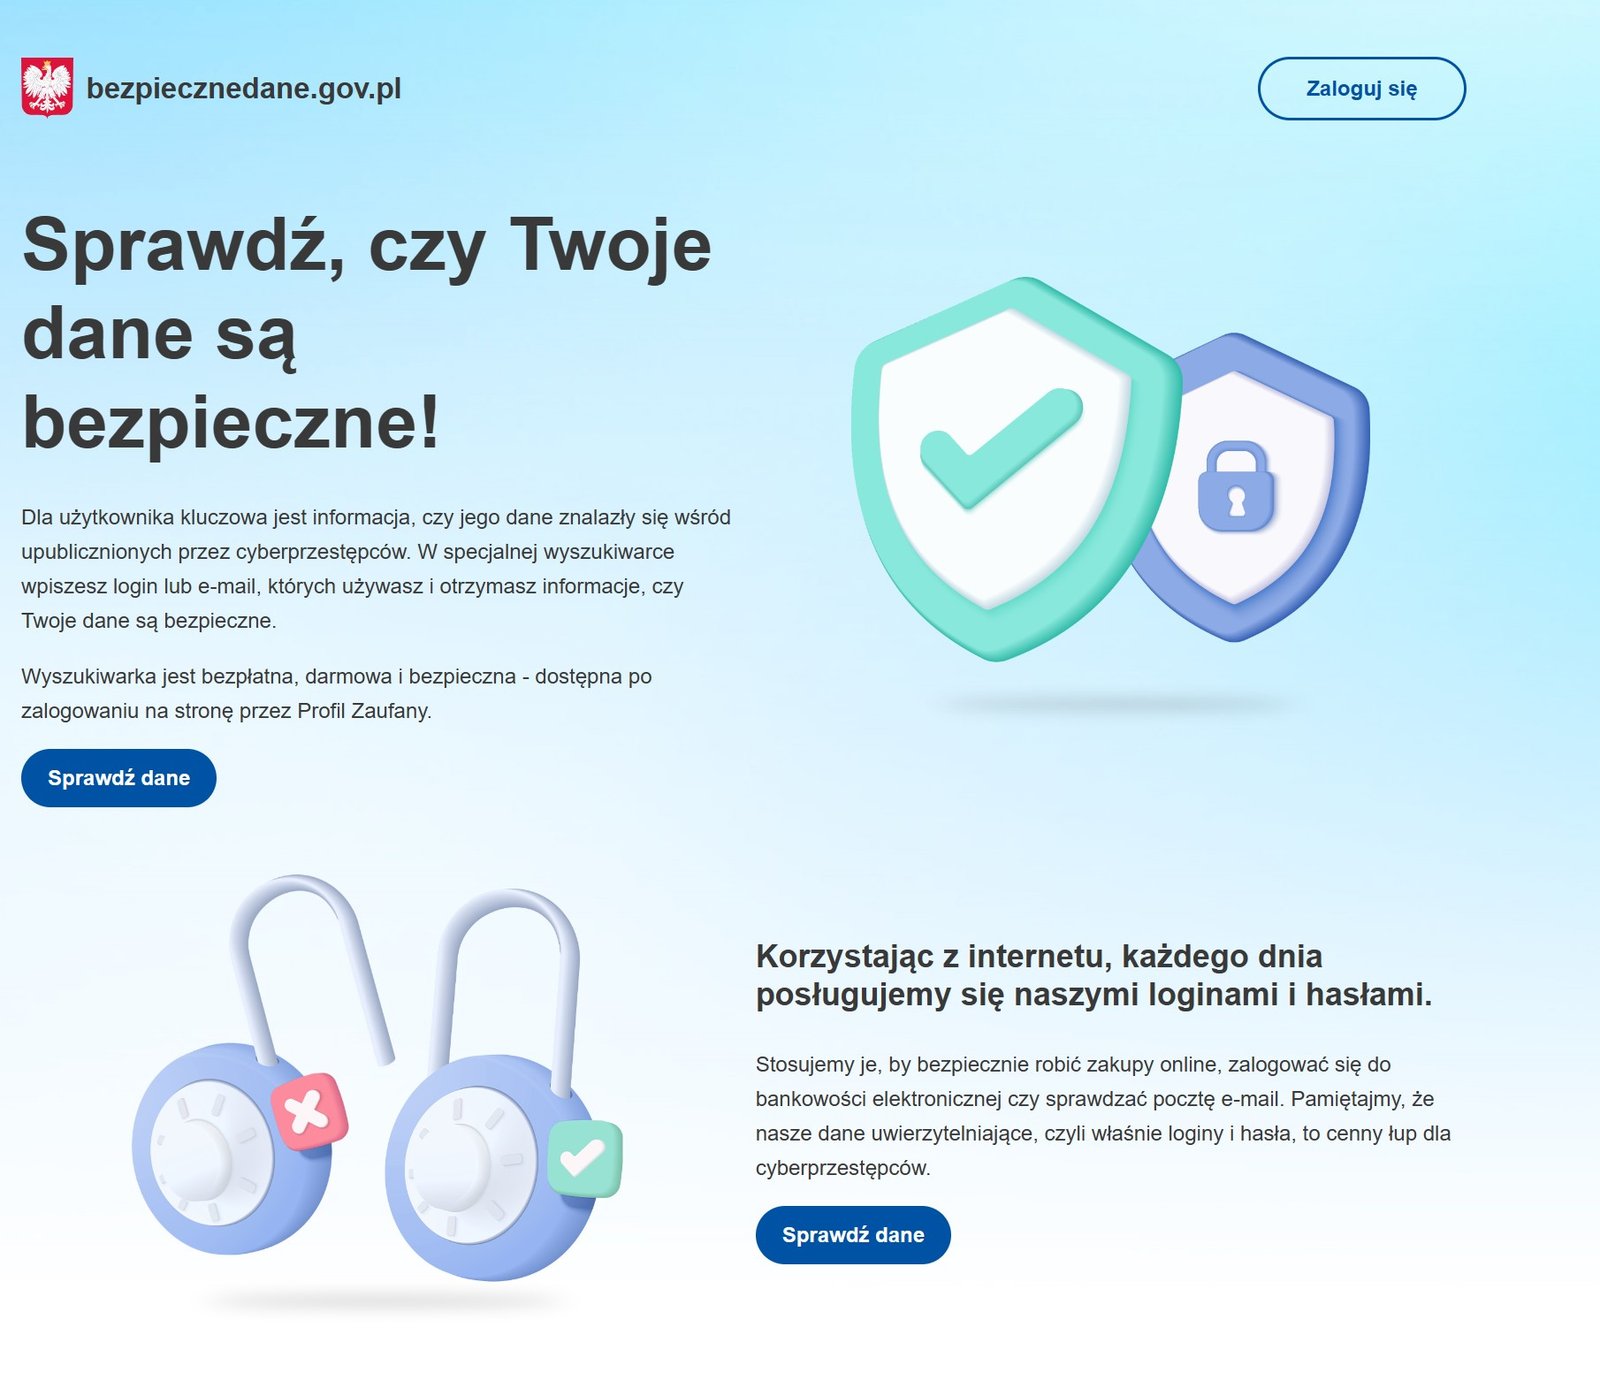 wyciek - bezpiecznedane.gov.pl